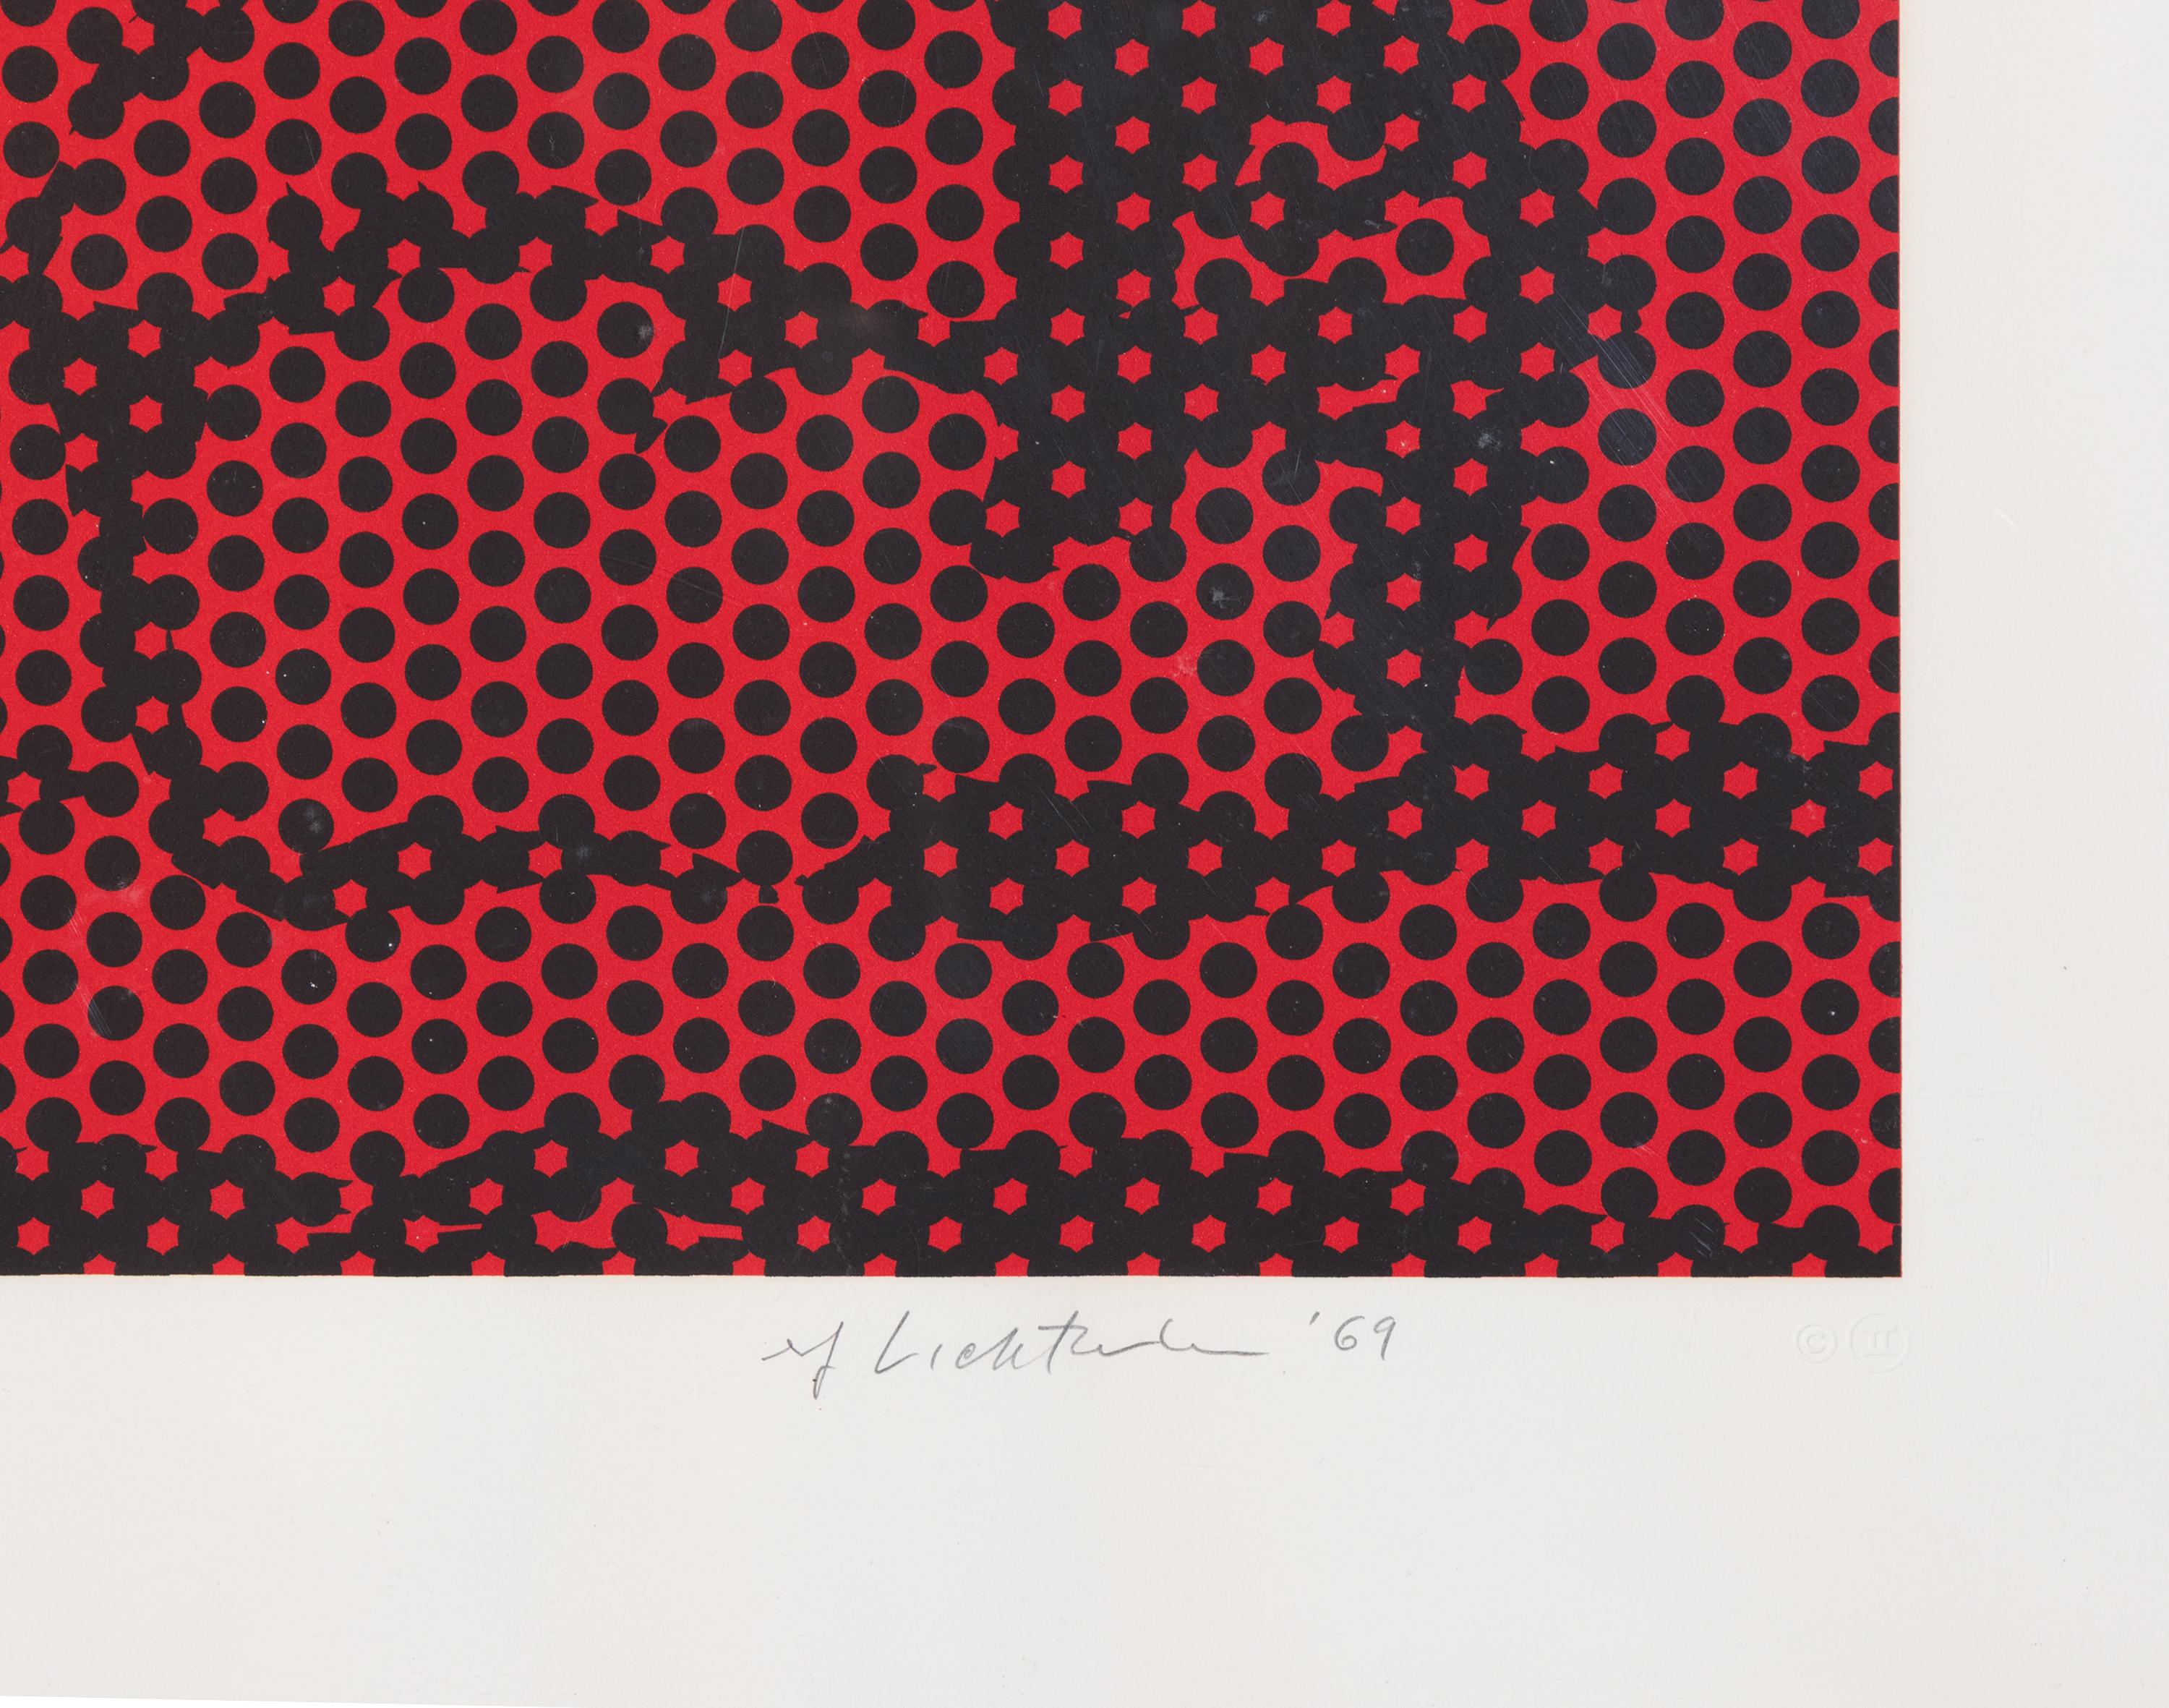 Heuhaufen #6, RL69-236 (Braun), Abstract Print, von Roy Lichtenstein